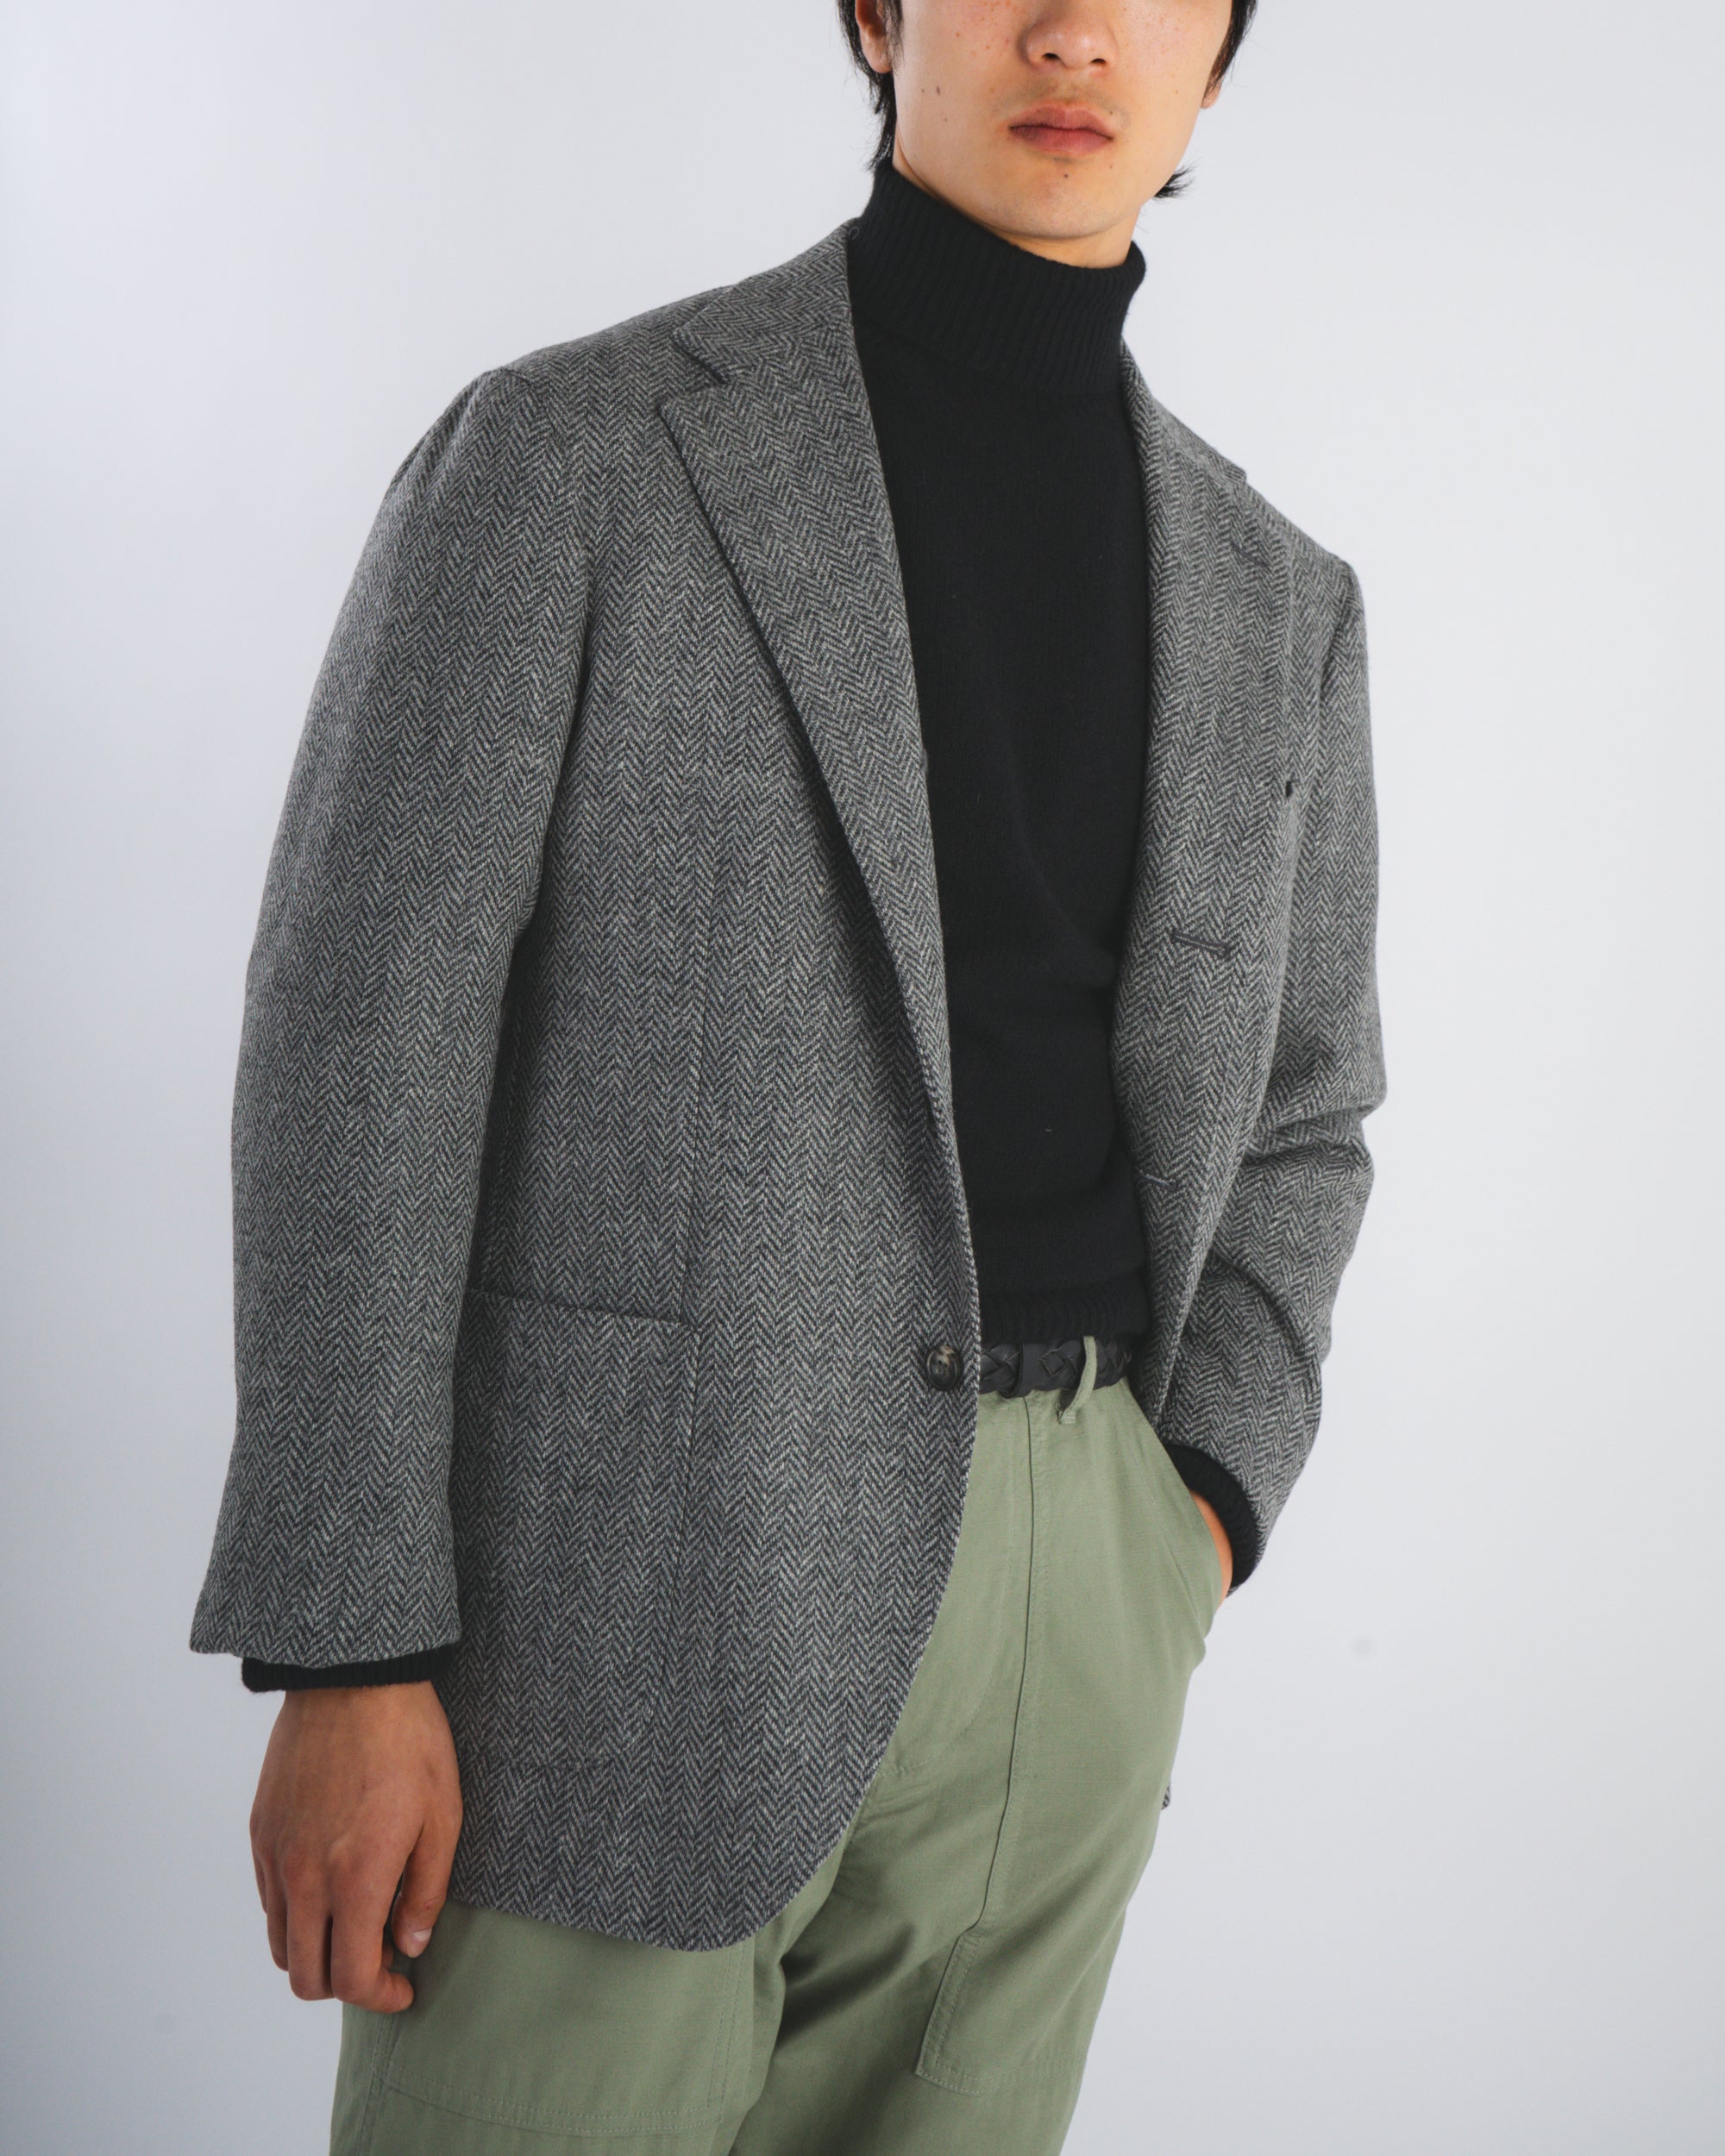 Sport Jacket - Grey Herringbone Wool